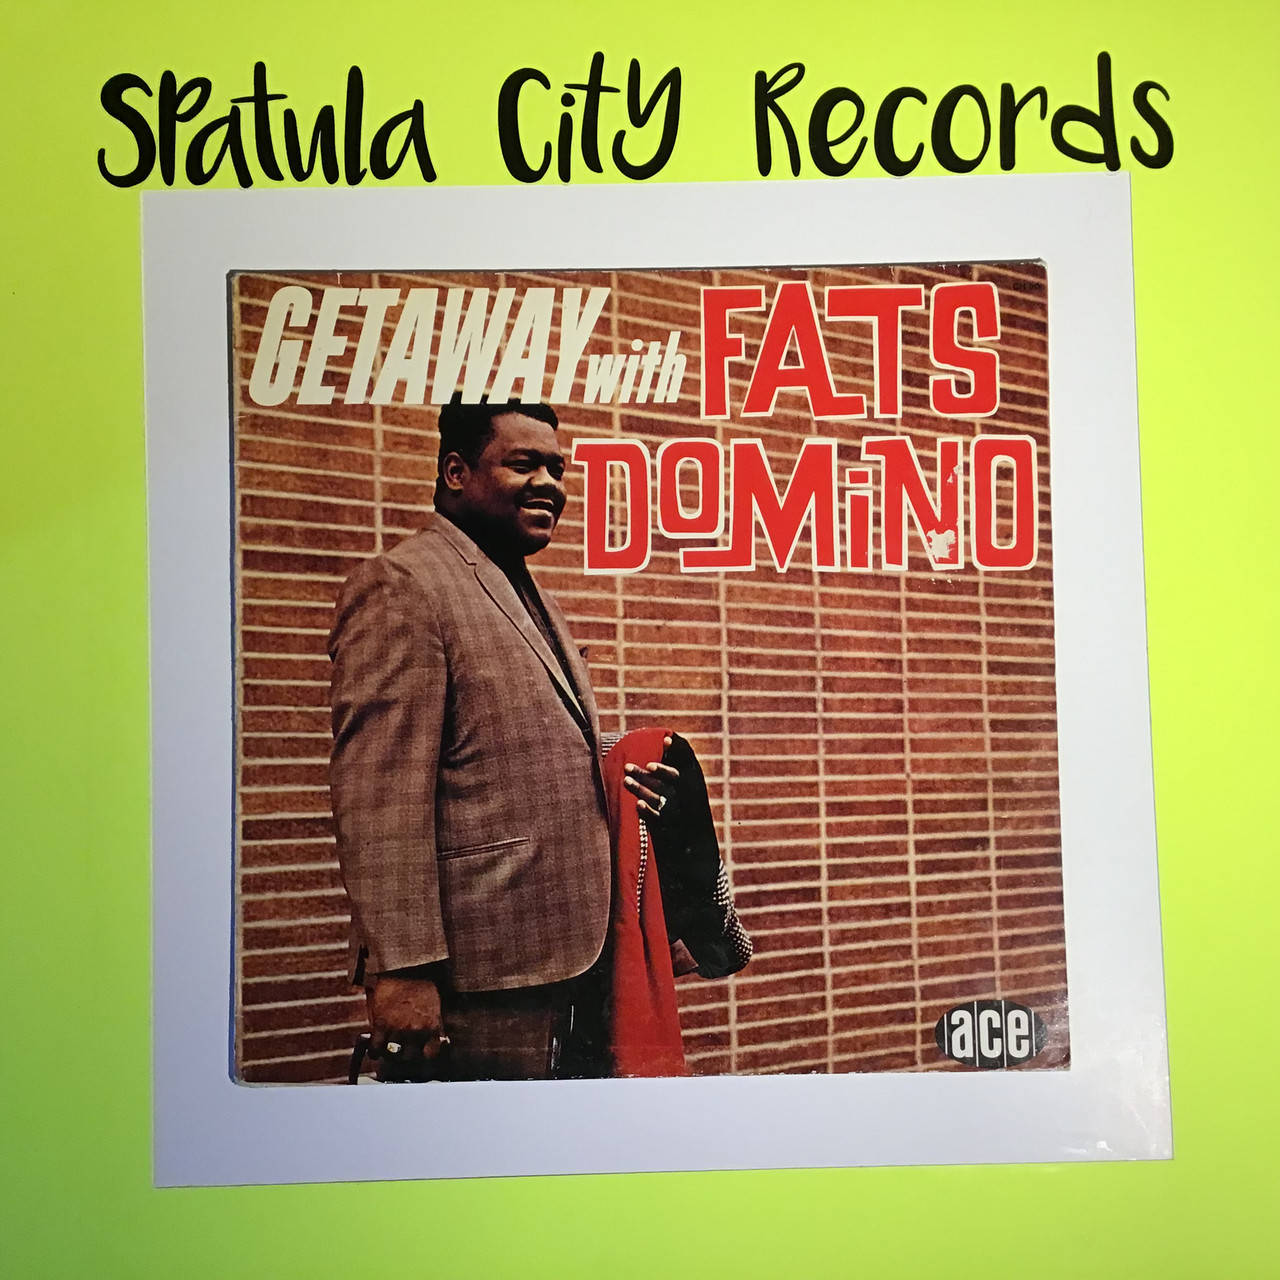 Fats Domino R&b Album Cover. (= Fats Domino R&b Album Cover.) Wallpaper